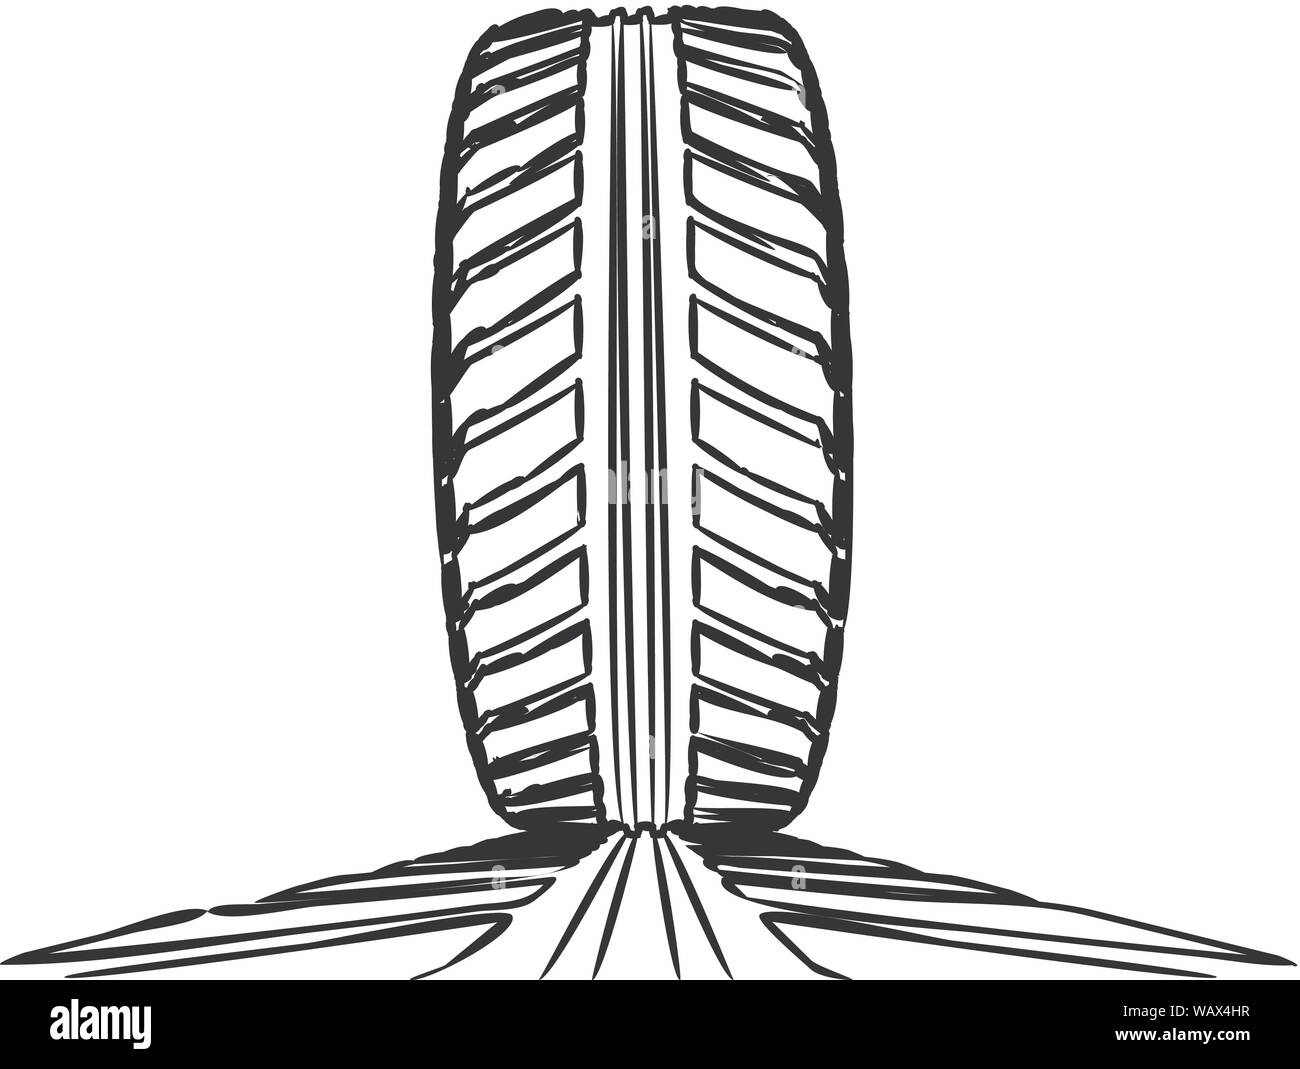 Pneumatici per auto con tracce di pneumatici su uno sfondo bianco. Disegnate a mano design Illustrazione Vettoriale